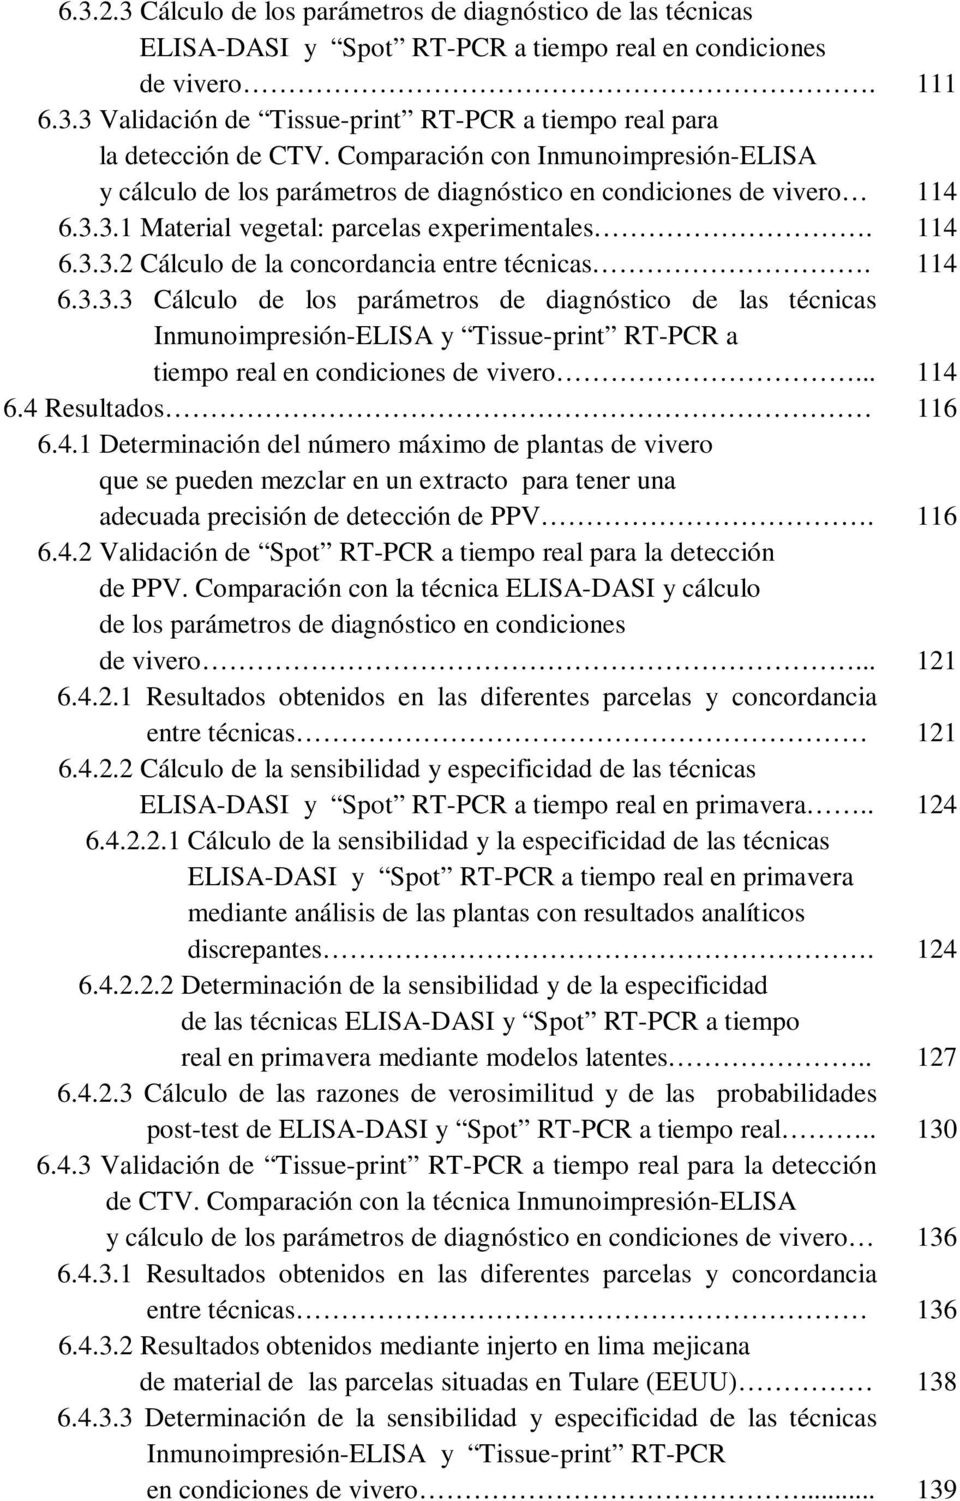 114 6.3.3.3 Cálculo de los parámetros de diagnóstico de las técnicas..inmunoimpresión-elisa y Tissue-print RT-PCR a..tiempo real en condiciones de vivero... 114 6.4 Resultados 116 6.4.1 Determinación del número máximo de plantas de vivero.